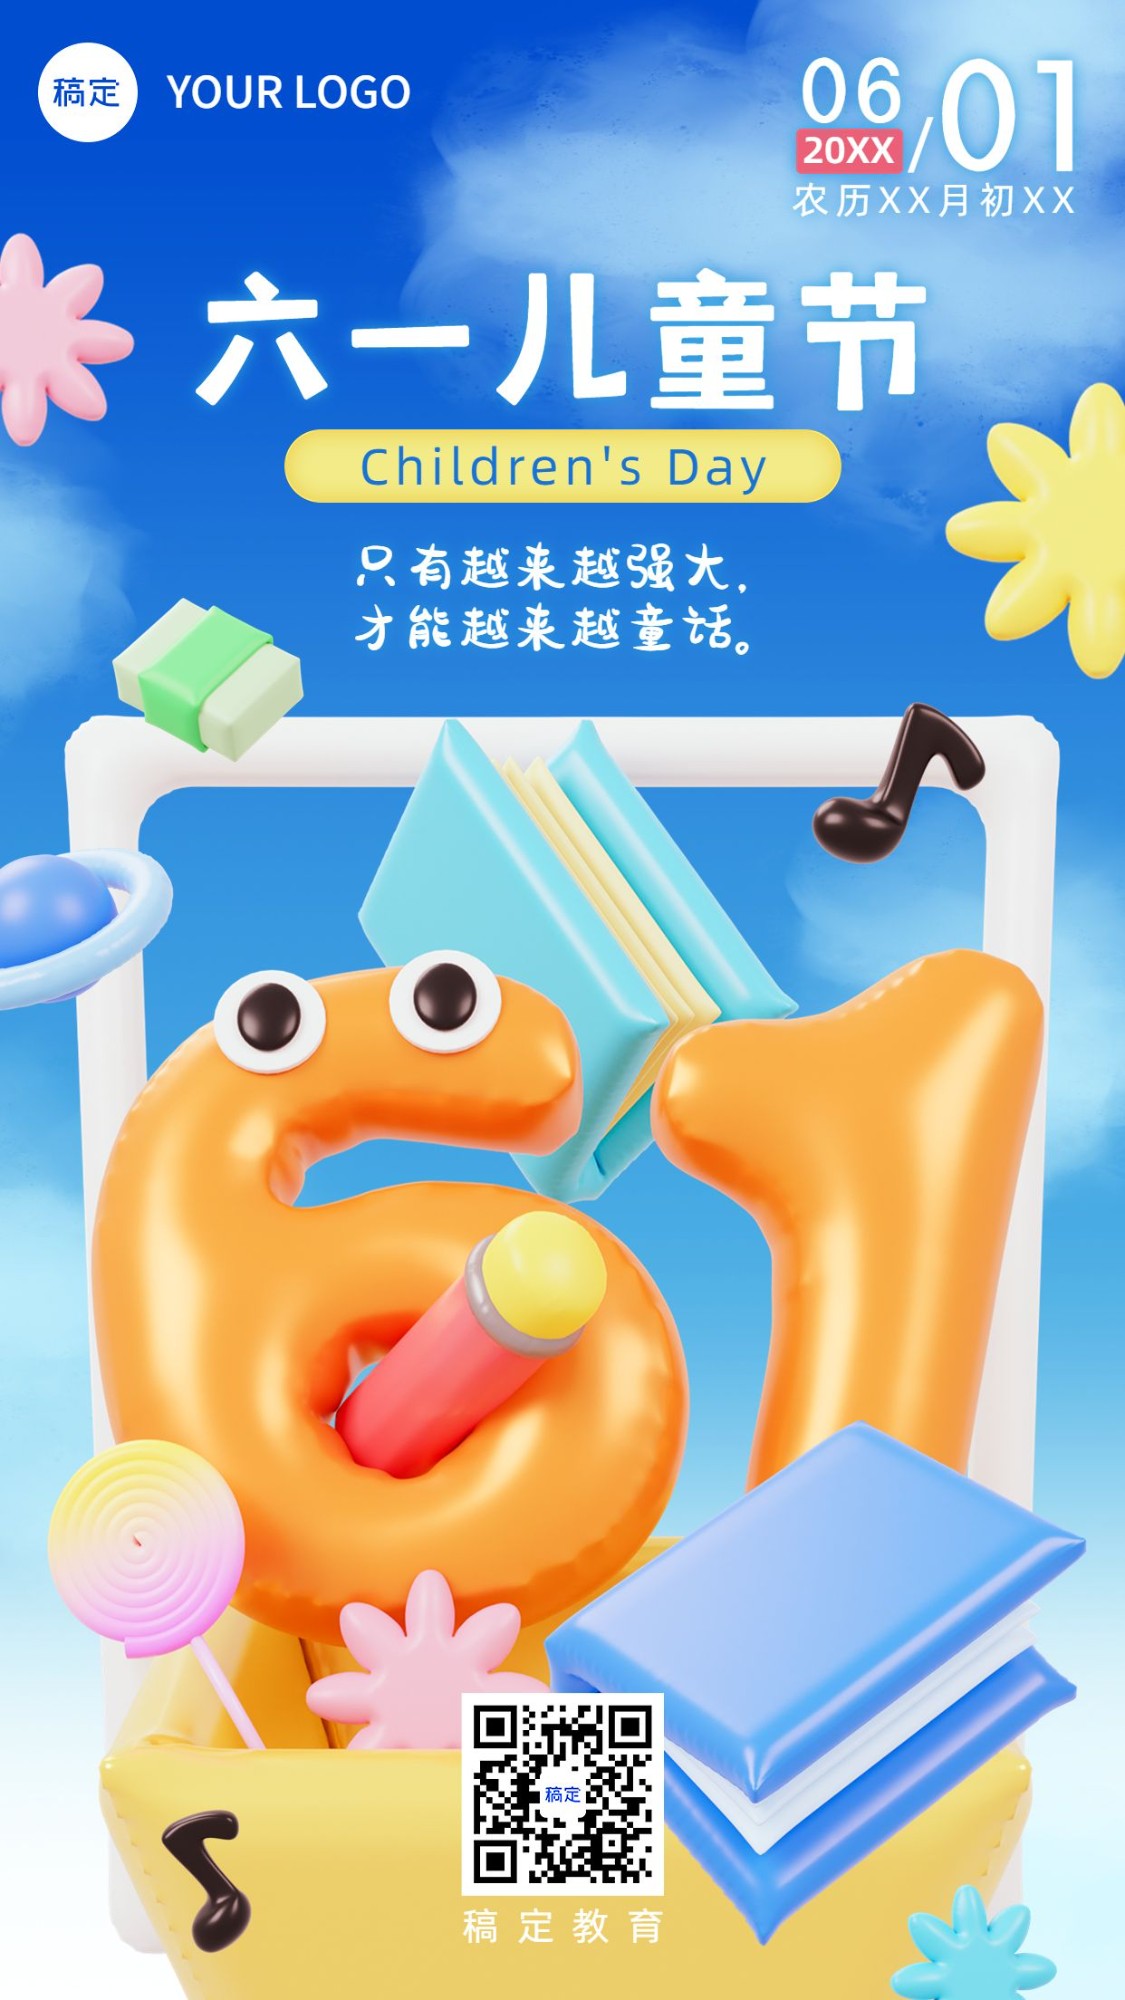 六一儿童节教育培训行业节日祝福3D六一大字设计手机海报